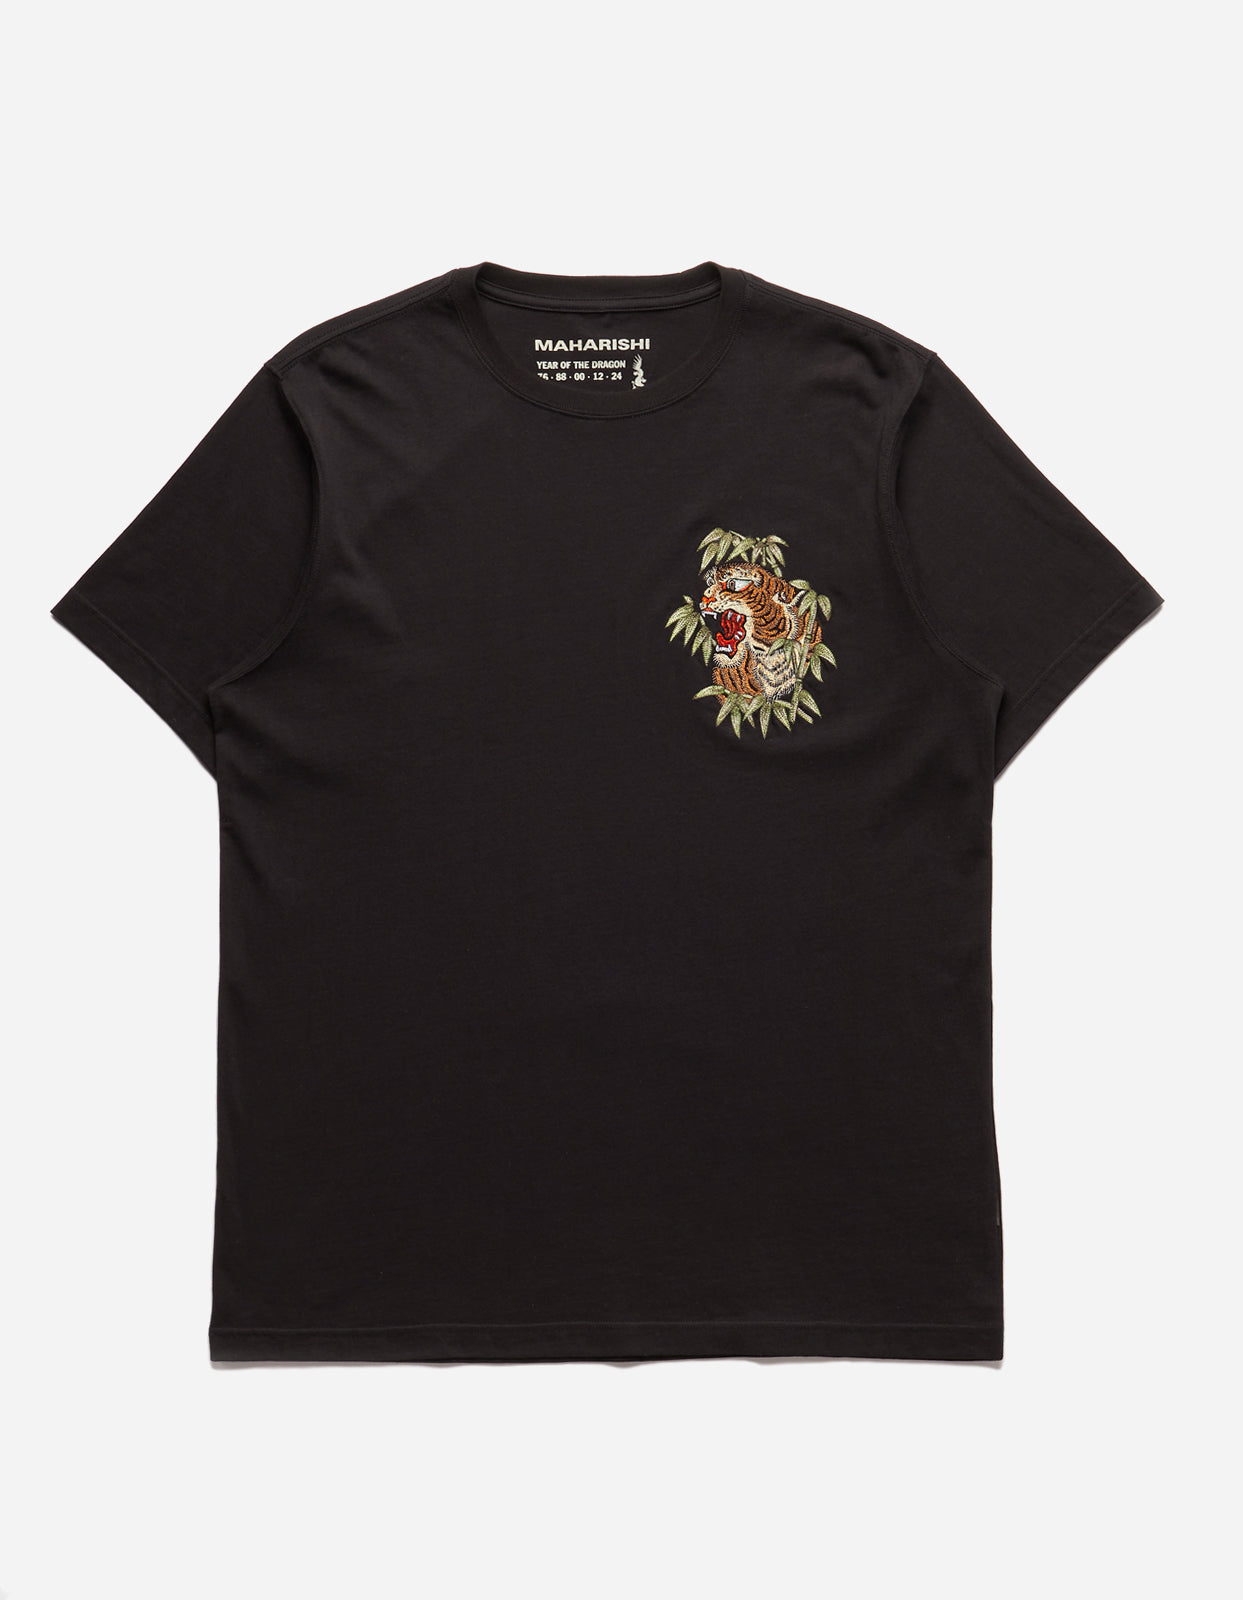 Maharishi | Maha Tiger T-Shirt Black